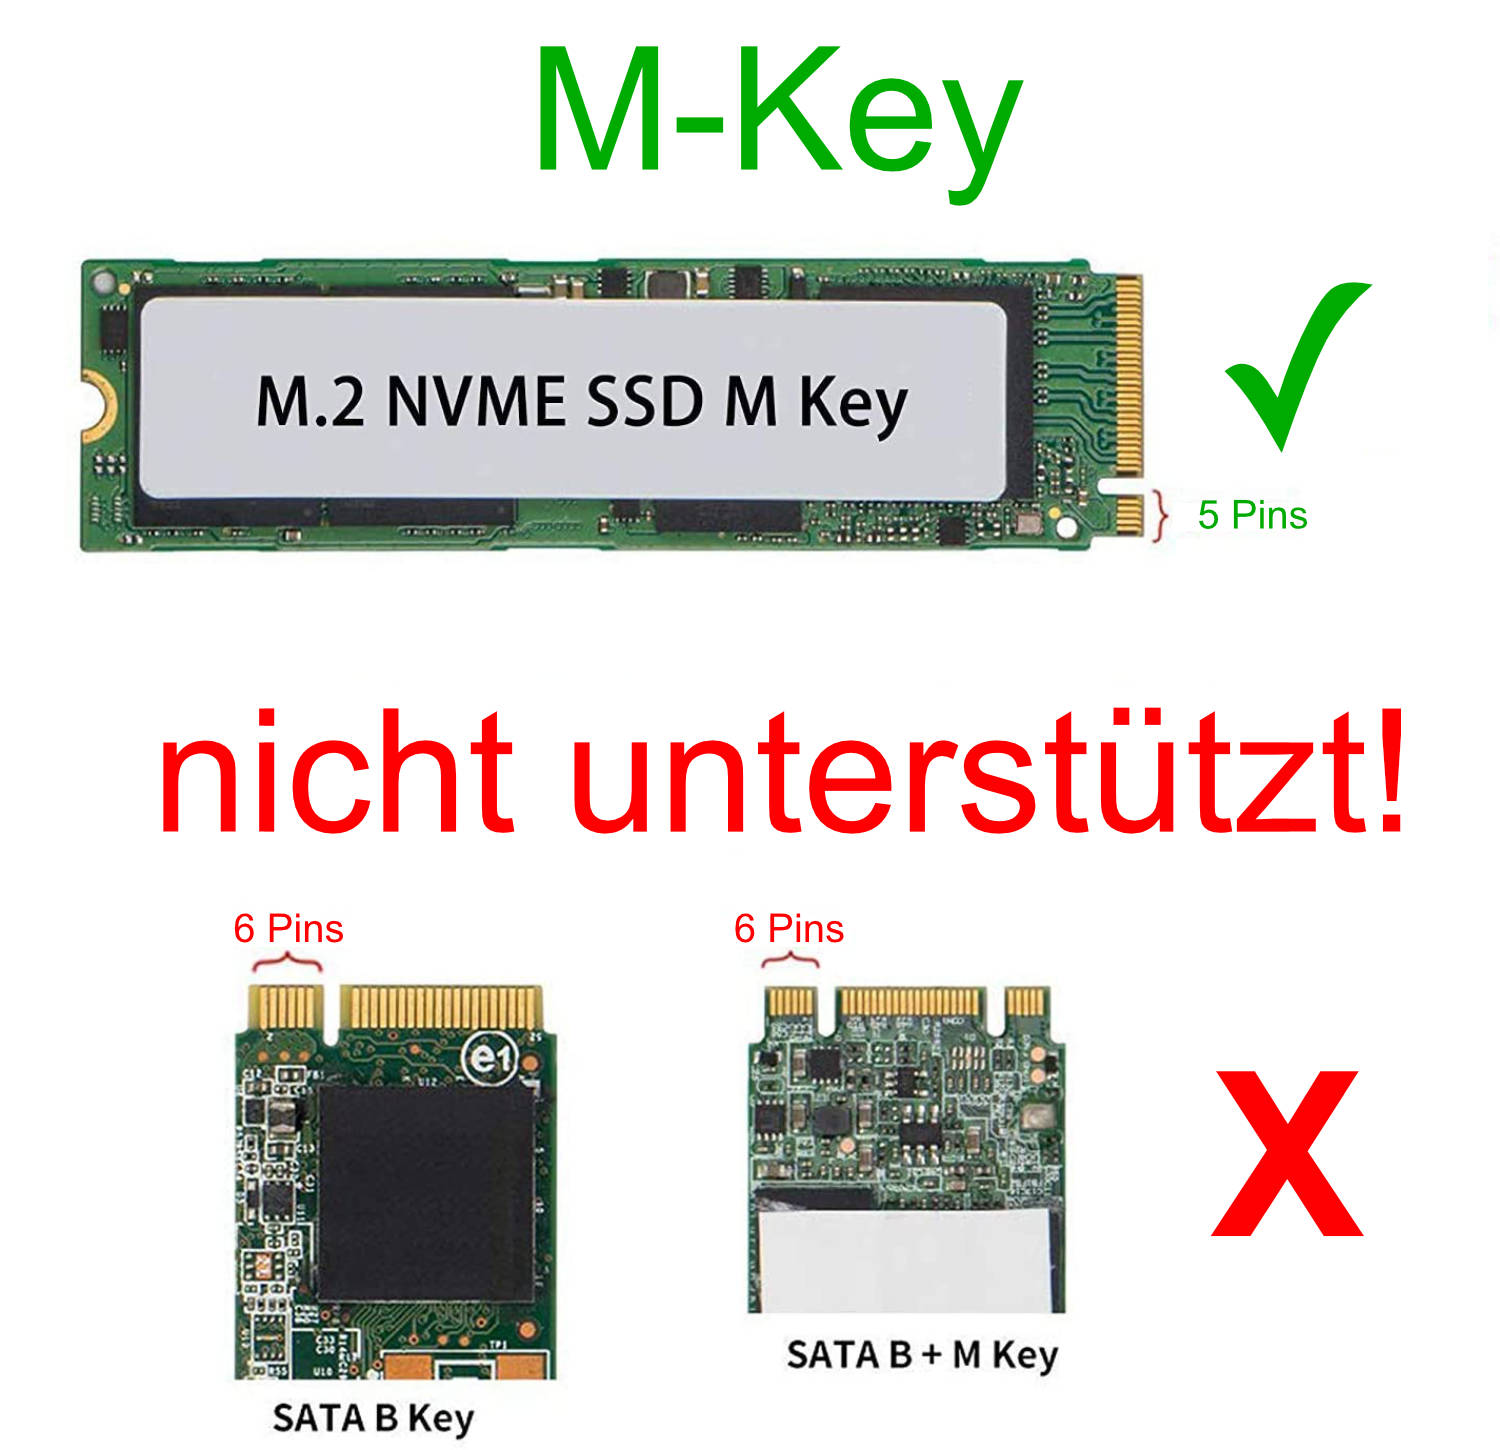 M-Key